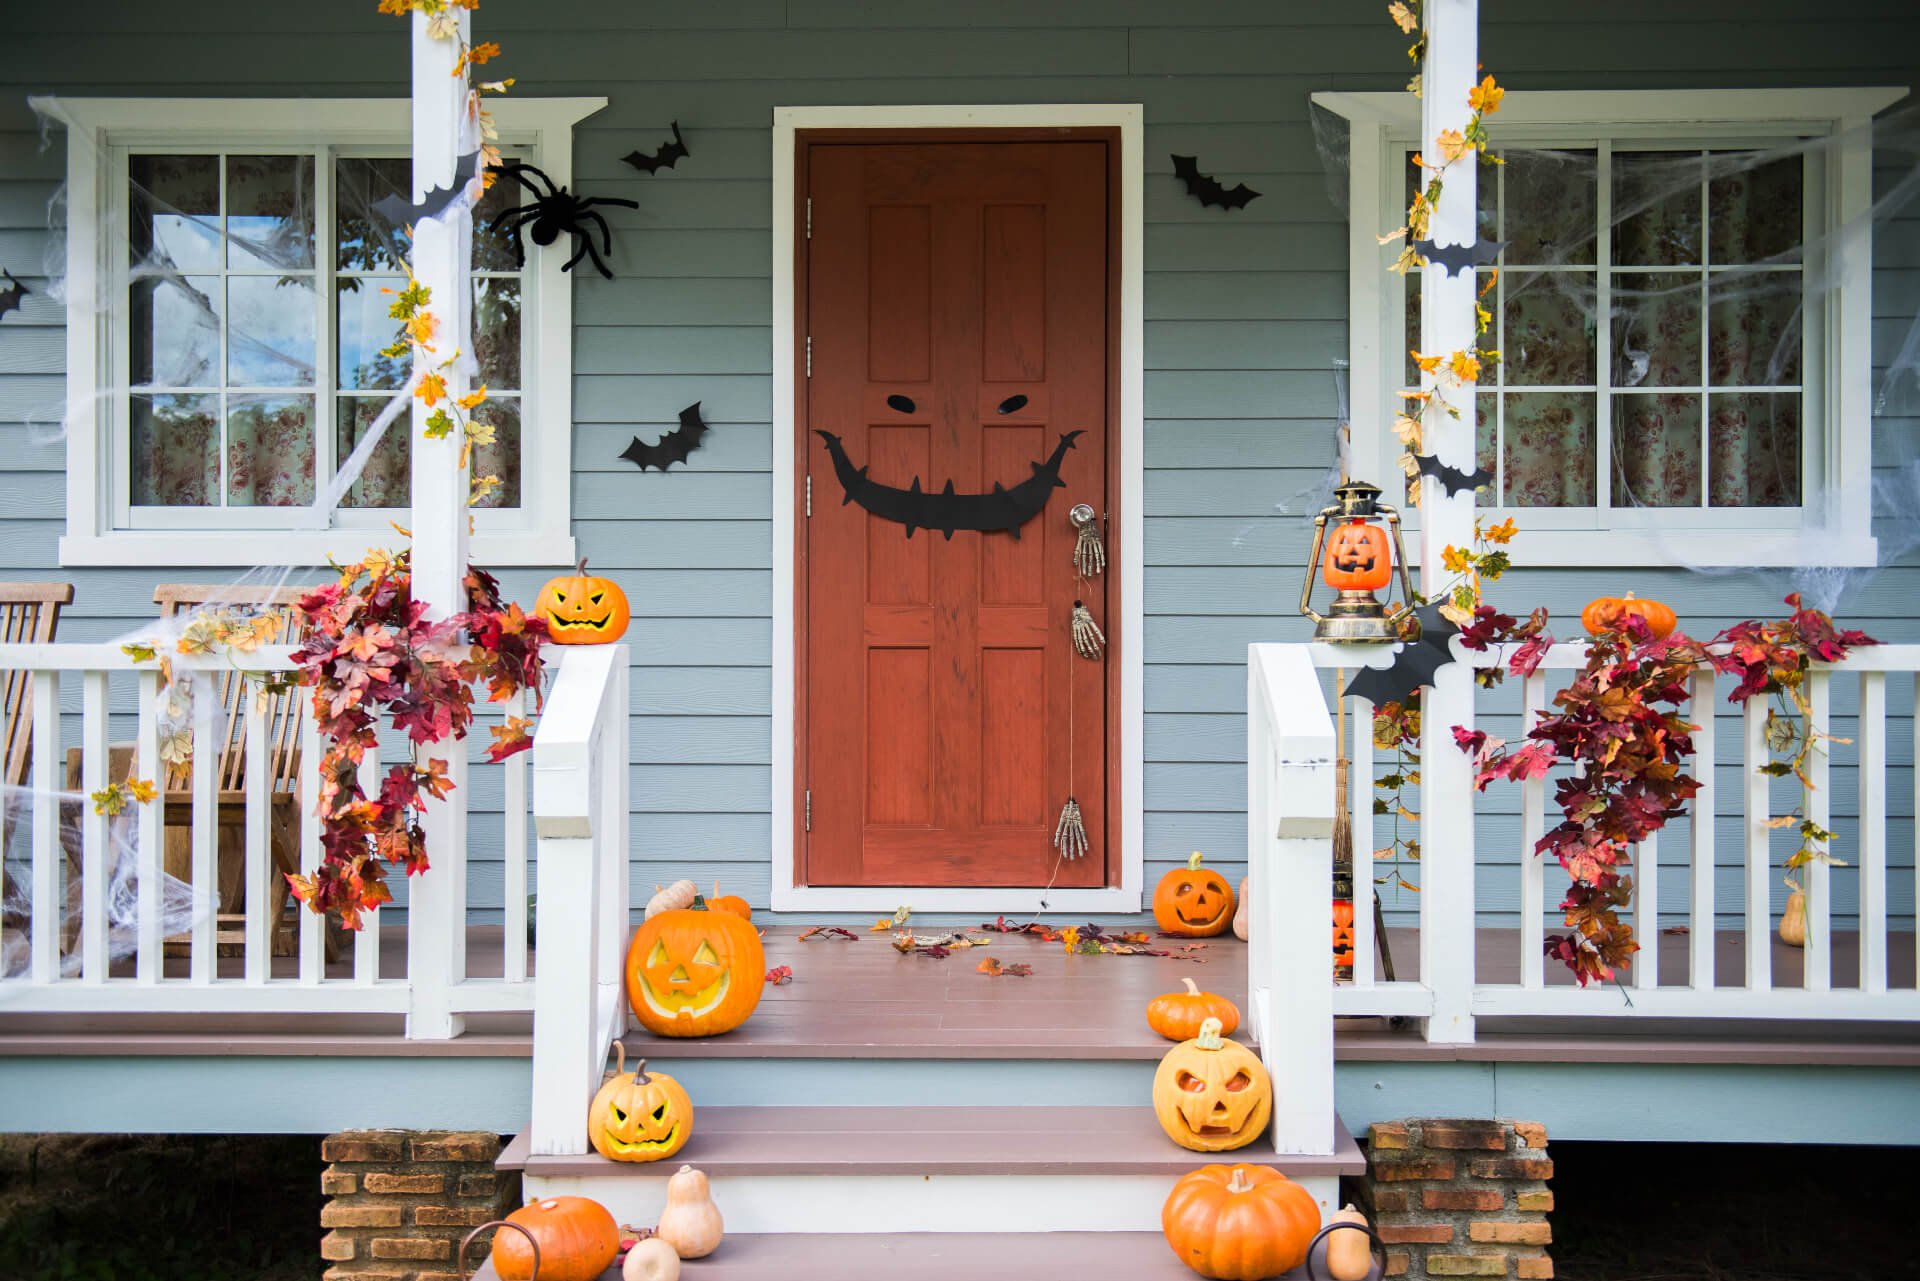 So gestaltest Du eine unvergessliche Halloweenparty für Kinder - inklusive Sicherheitstipps und kreativen Ideen!